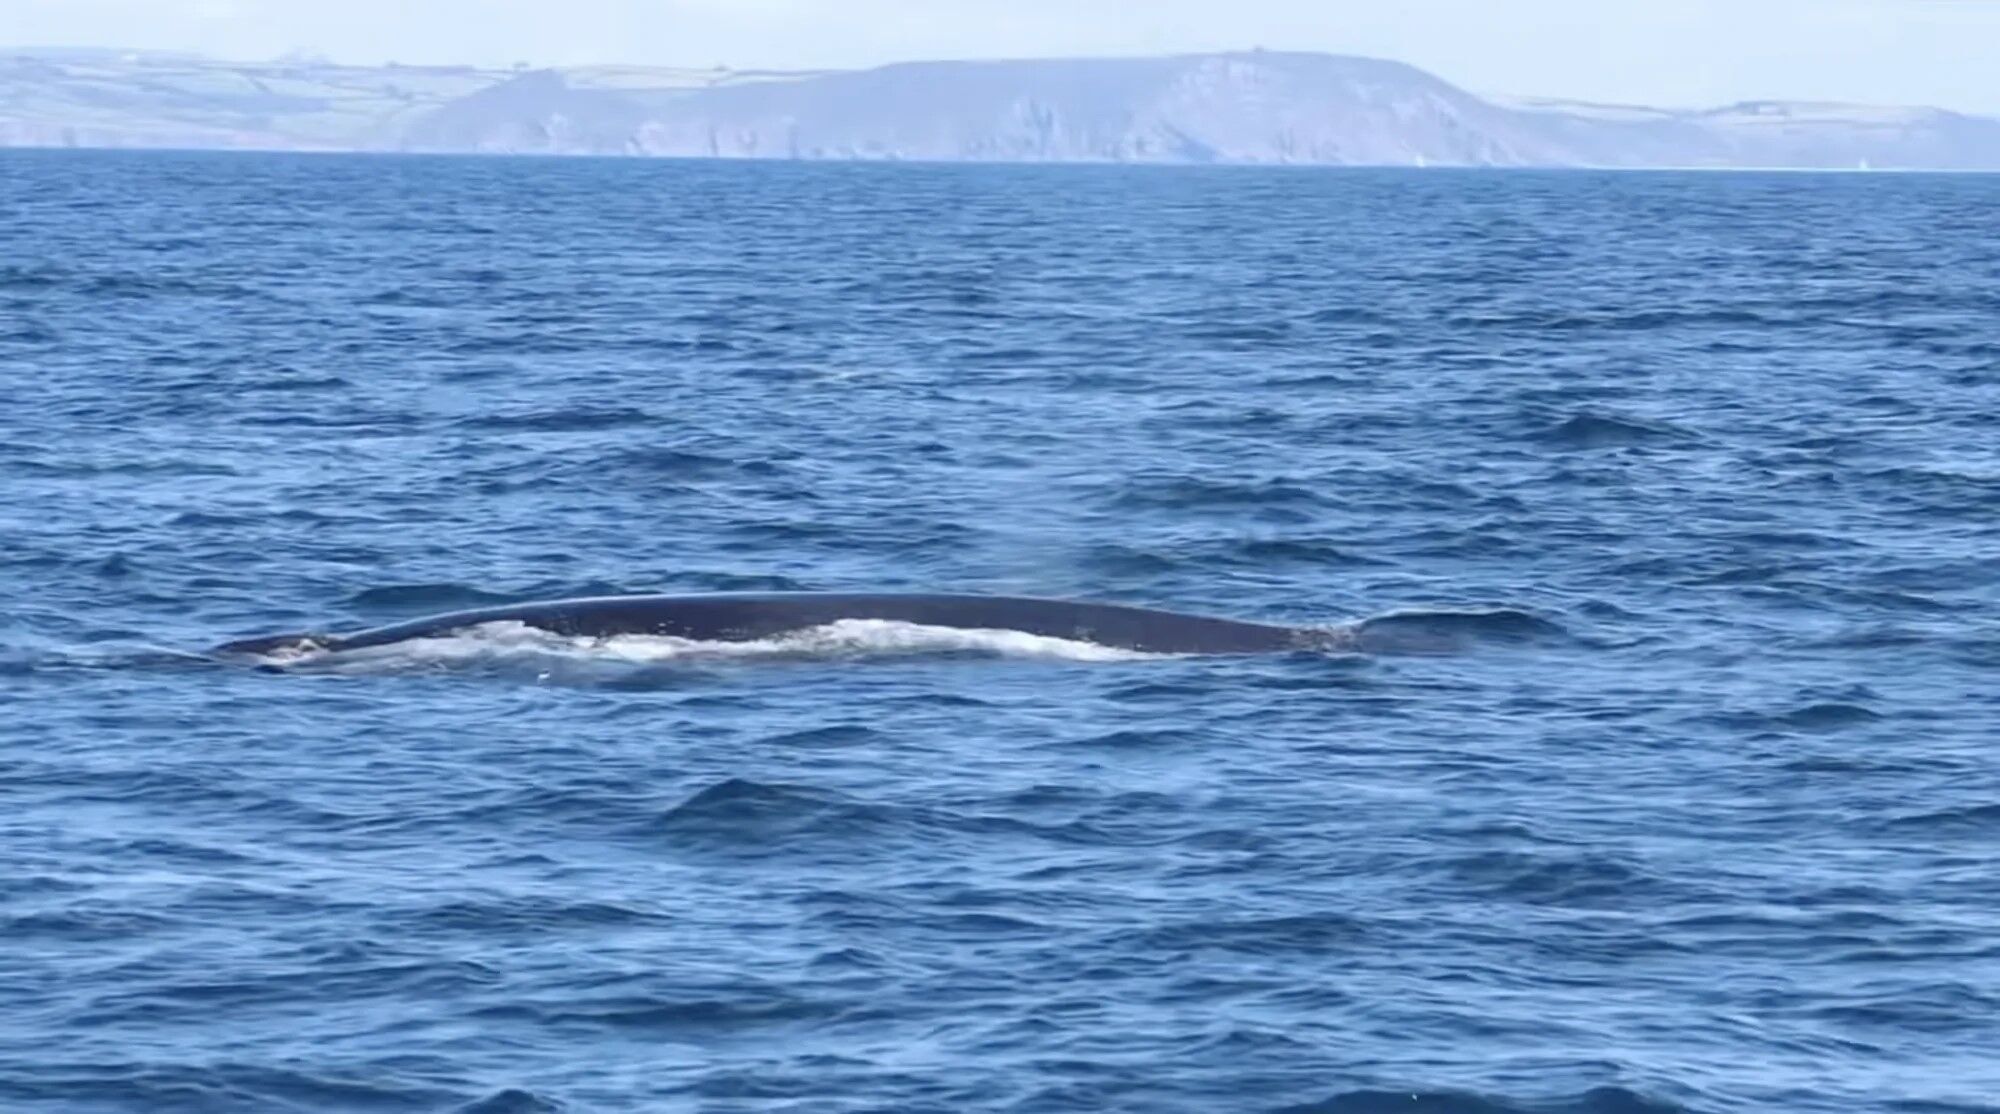 В Великобритании заметили стаю китов, которая подплыла близко к туристам. Видео